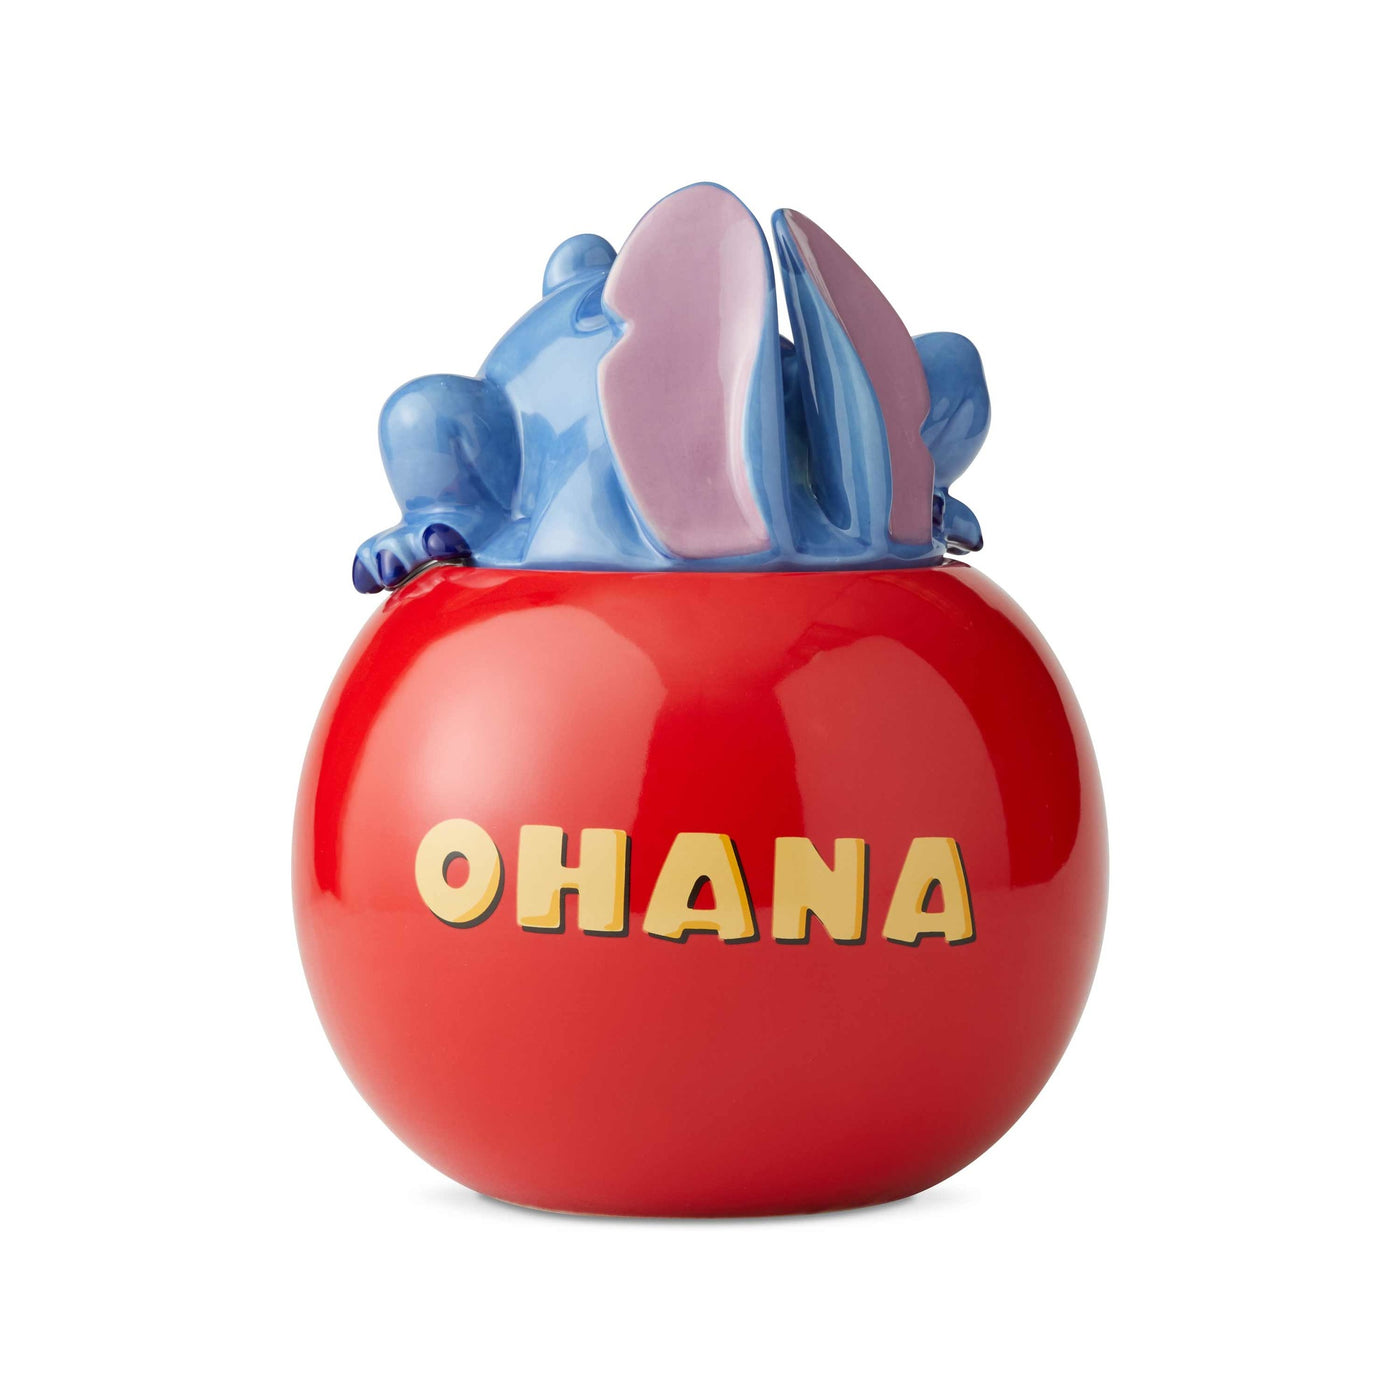 Enesco Disney Ceramics Stitch Ohana Cookie Jar New with Box